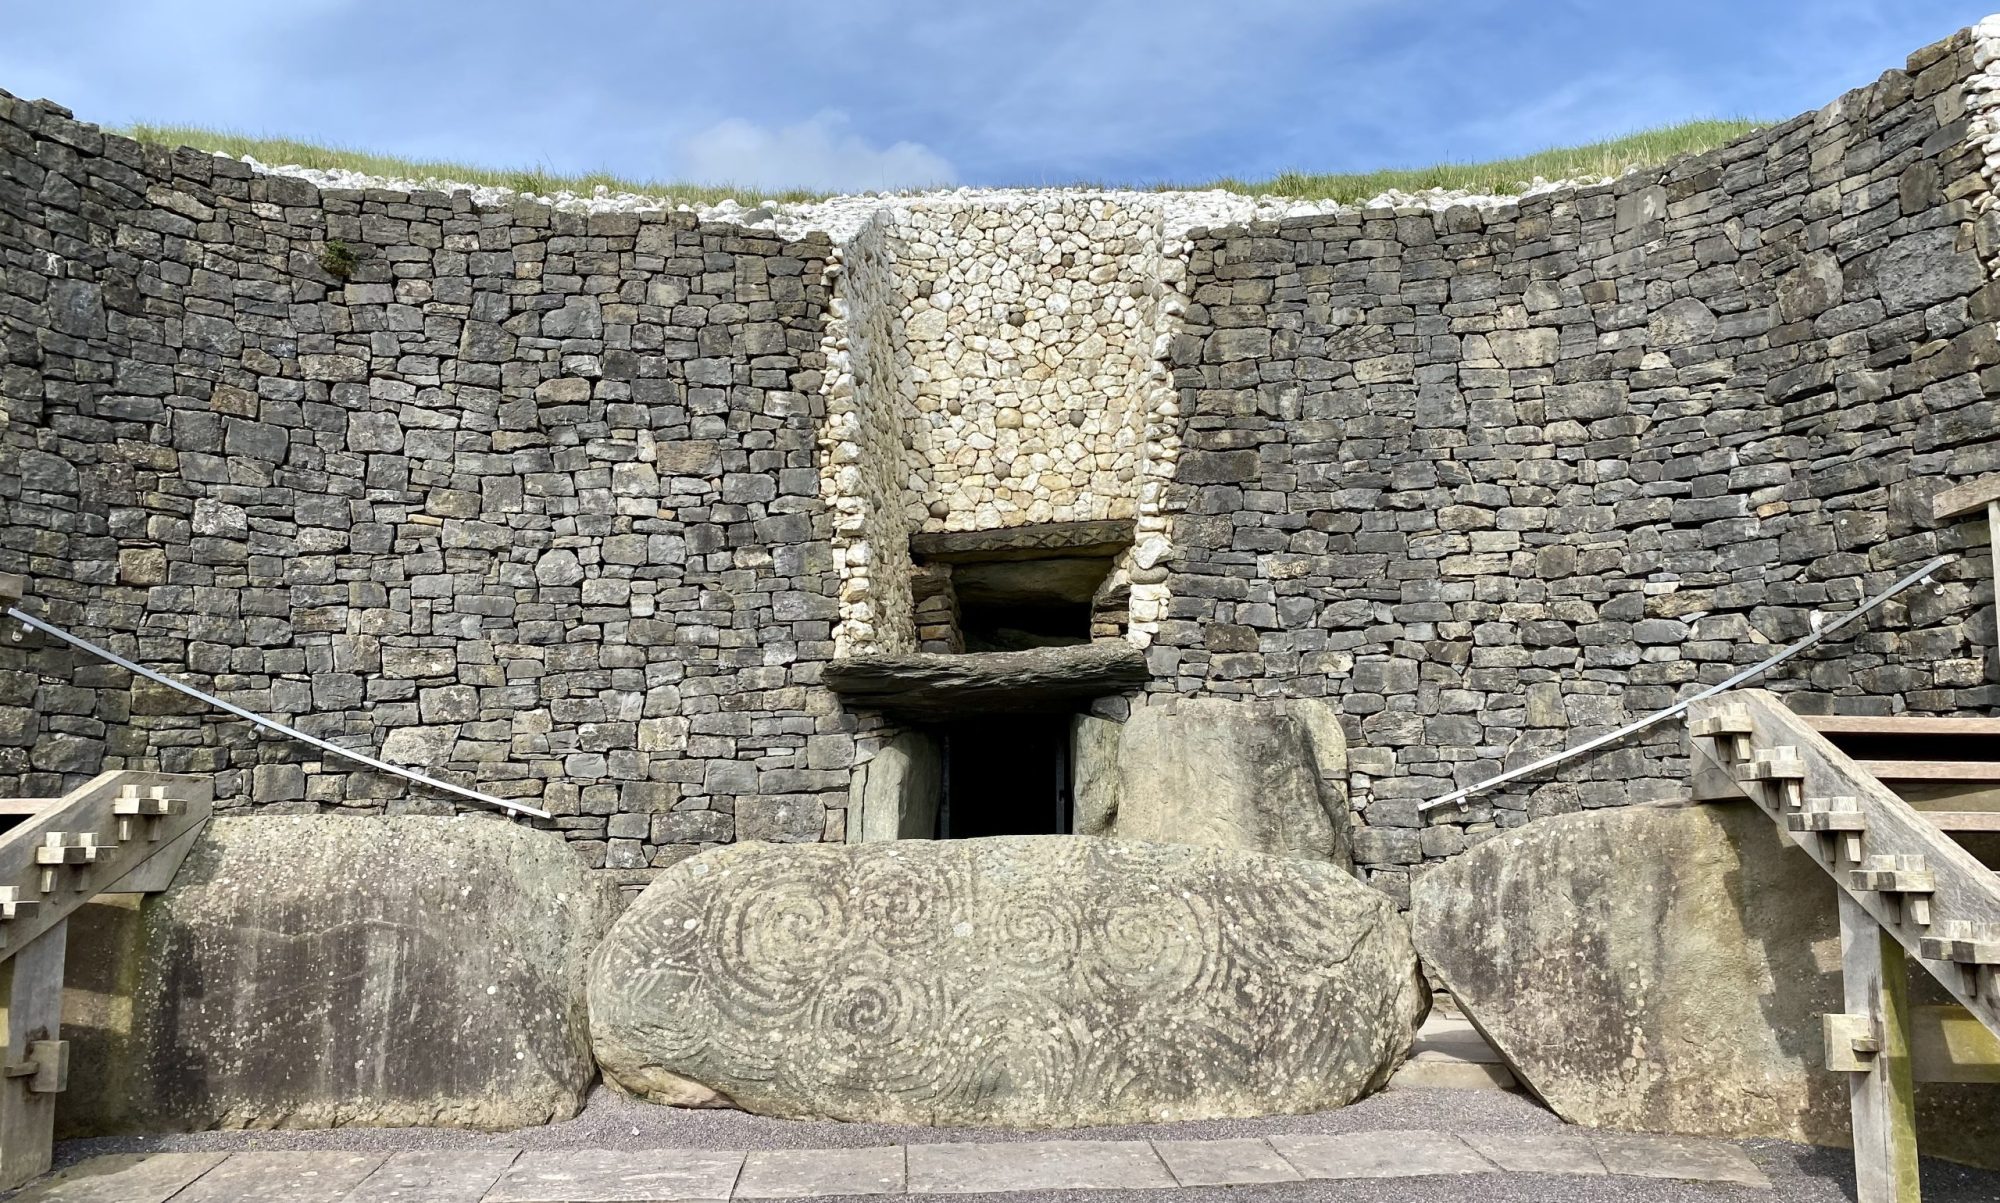 Entrance to the prehistoric Newgrange passage tomb in Ireland